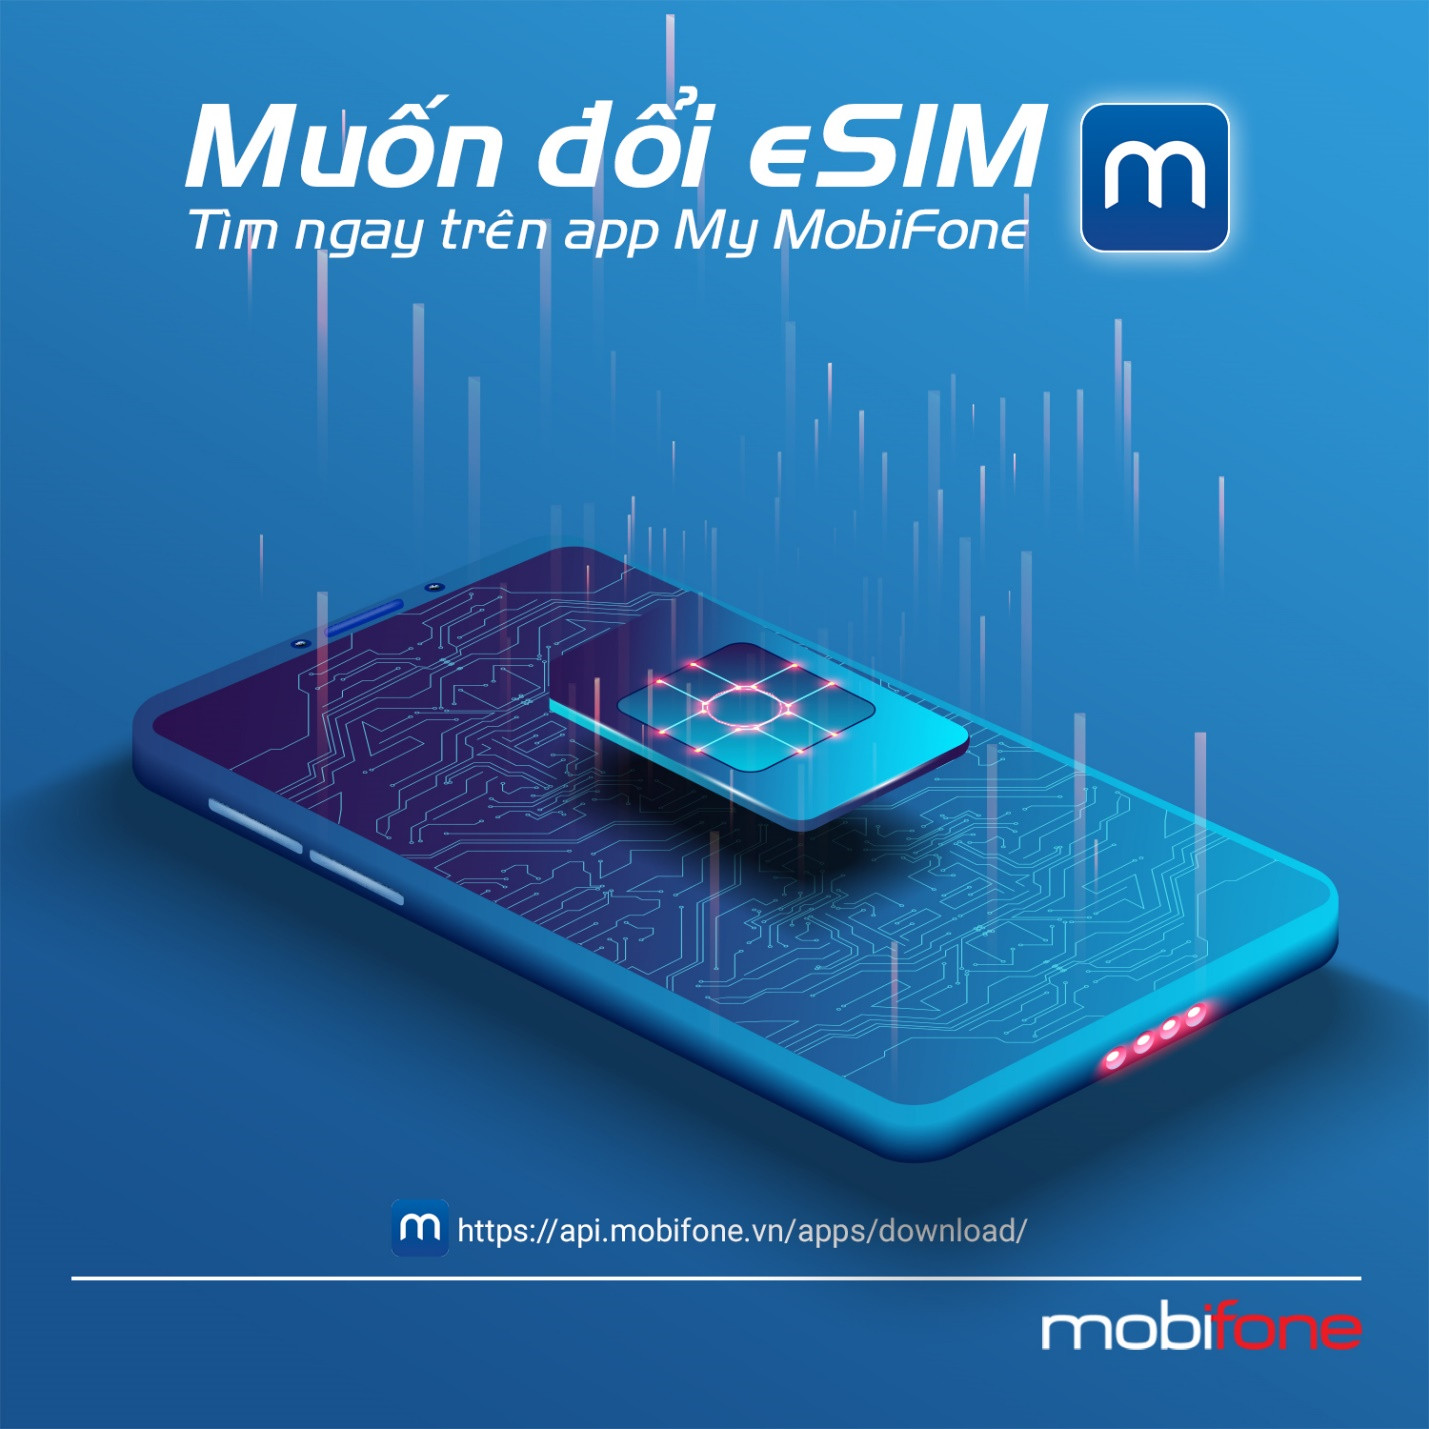 Chuyển đổi sang eSim dễ dàng cùng My MobiFone - 2